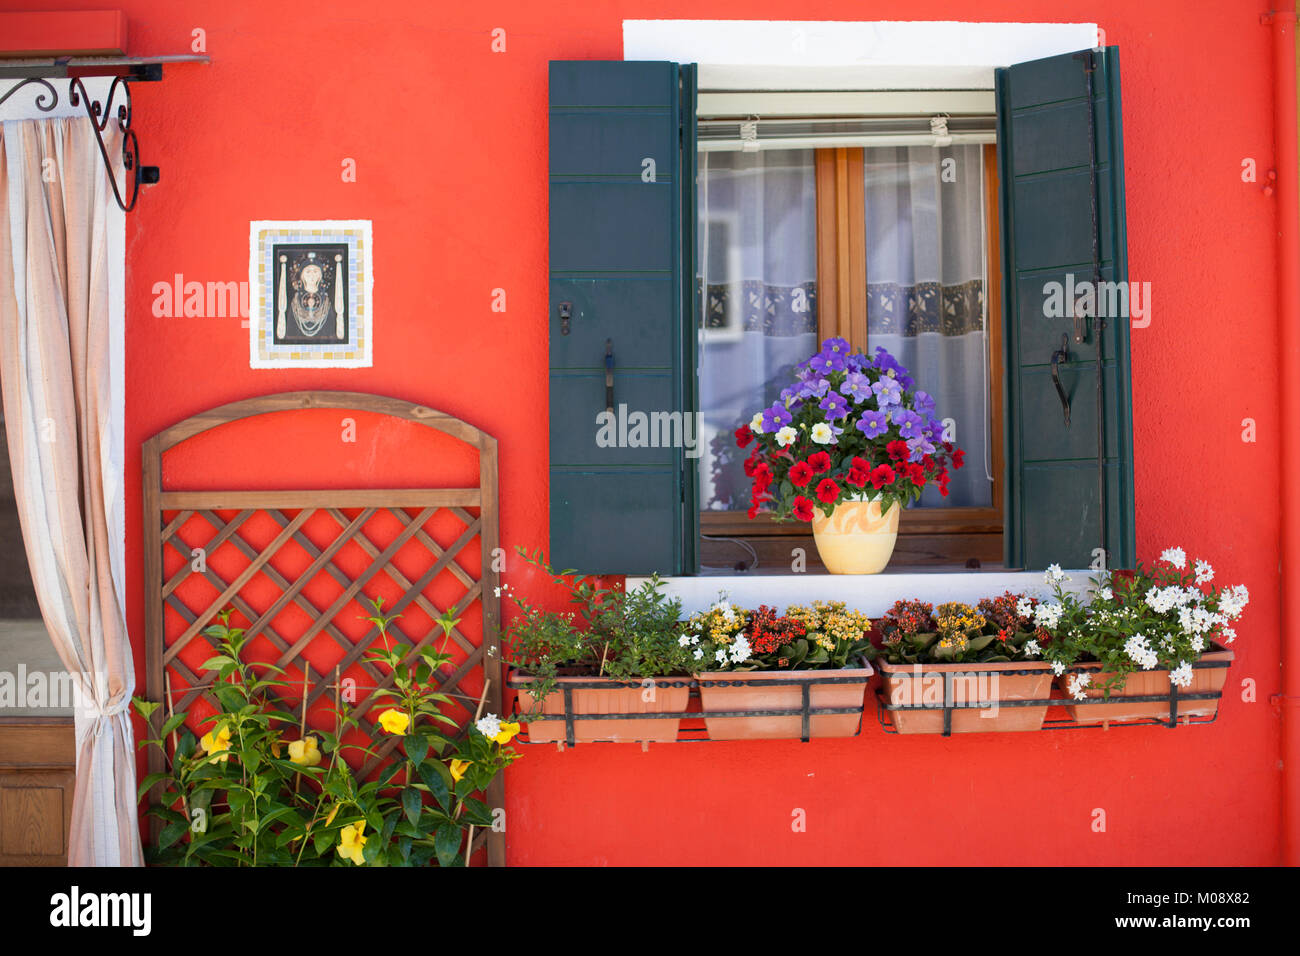 Impianto pot con rosso e viola i fiori sul davanzale di una casa arancione in Burano Venezia Italia. Foto Stock